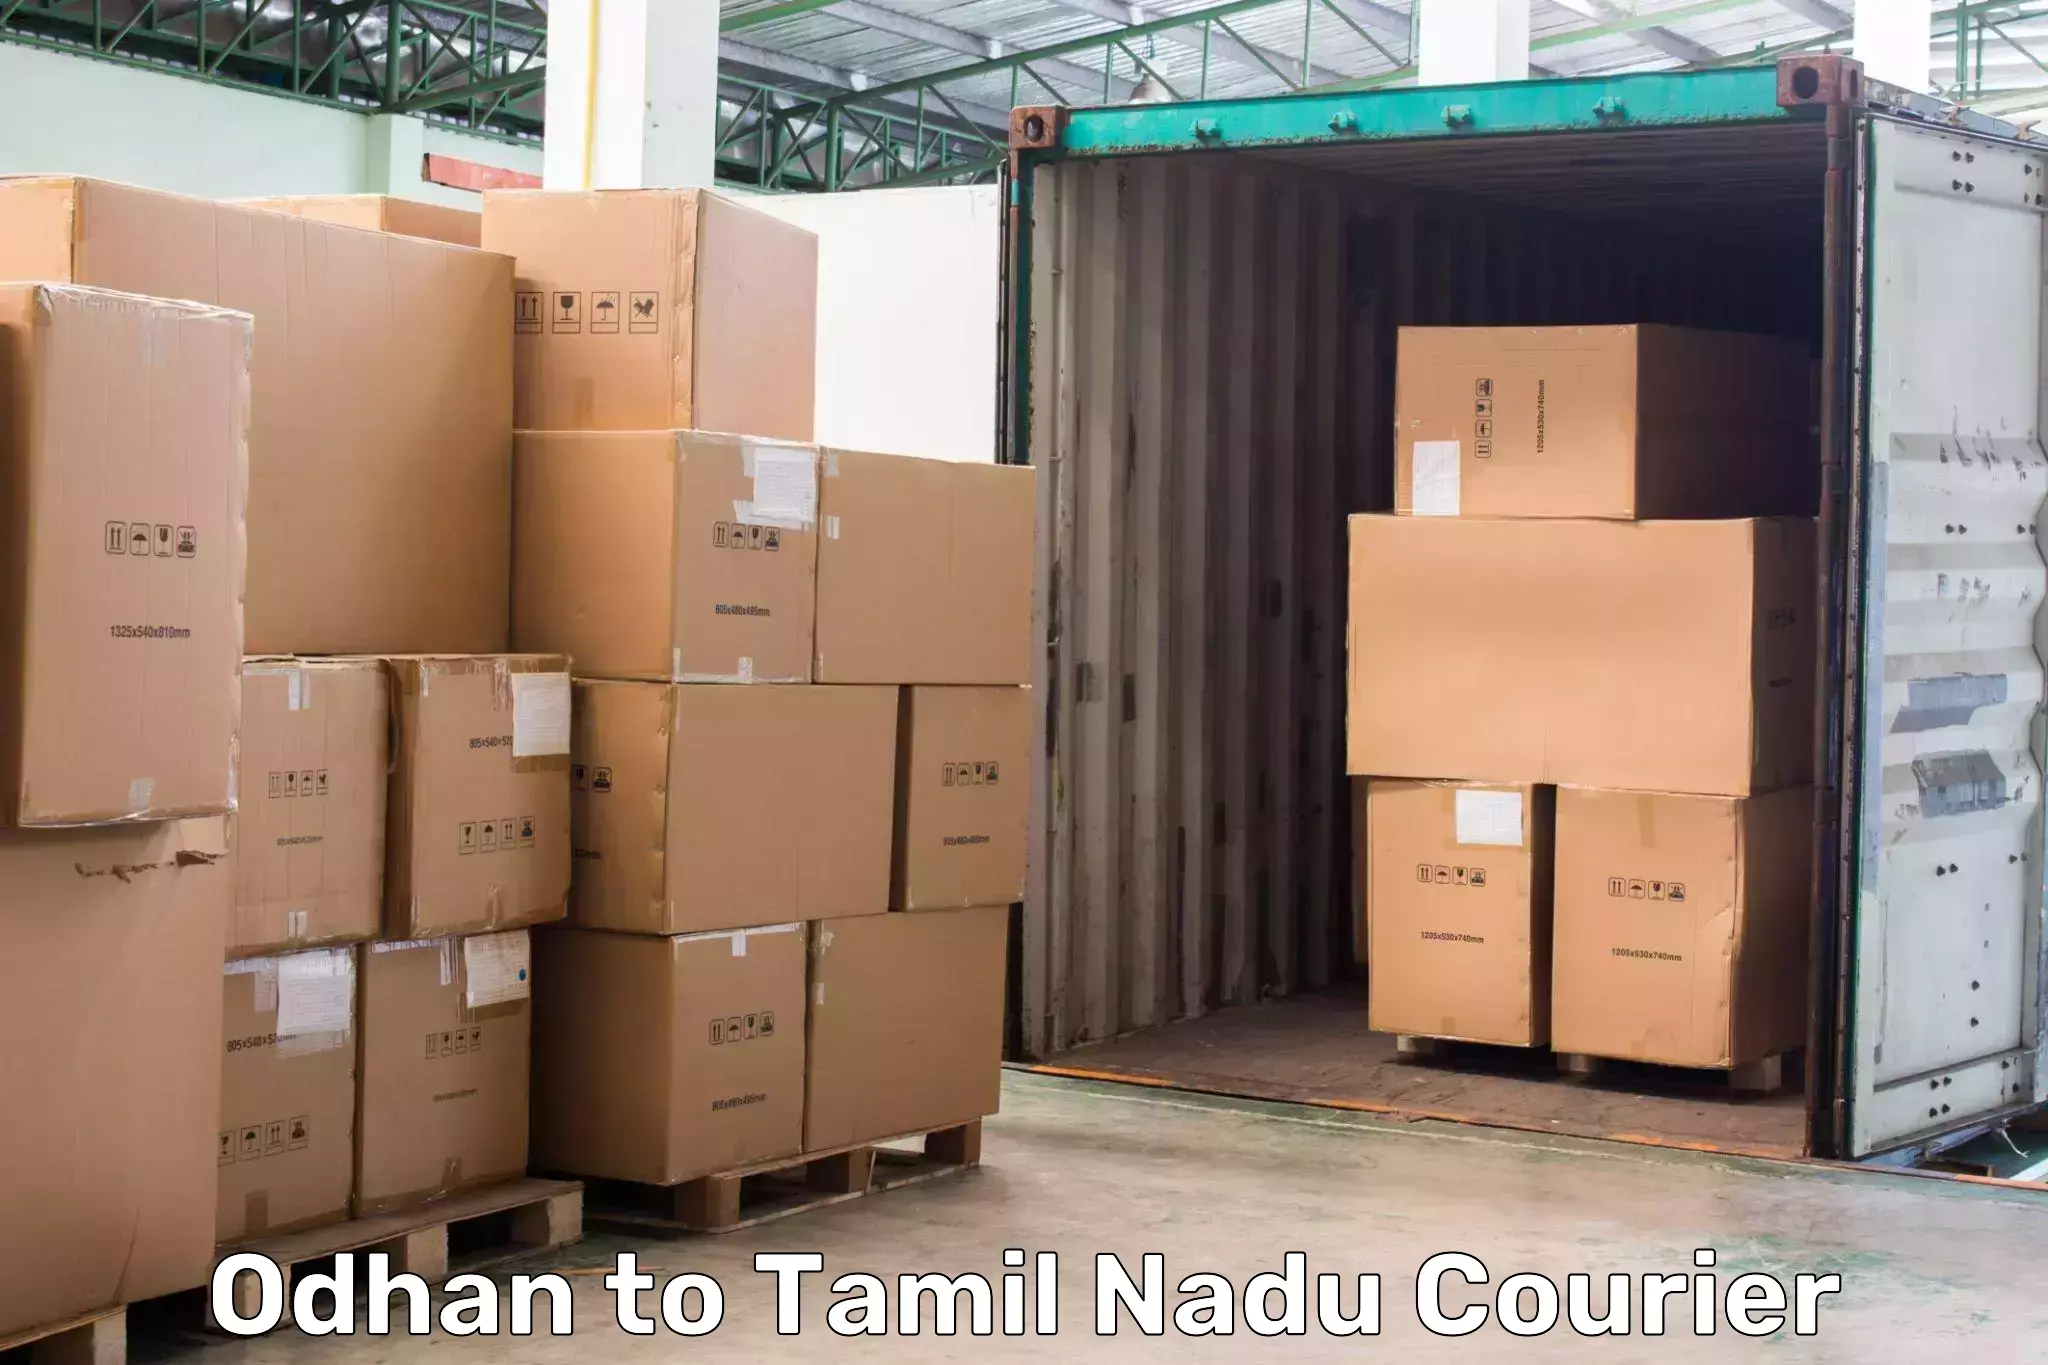 Express package transport in Odhan to Tamil Nadu